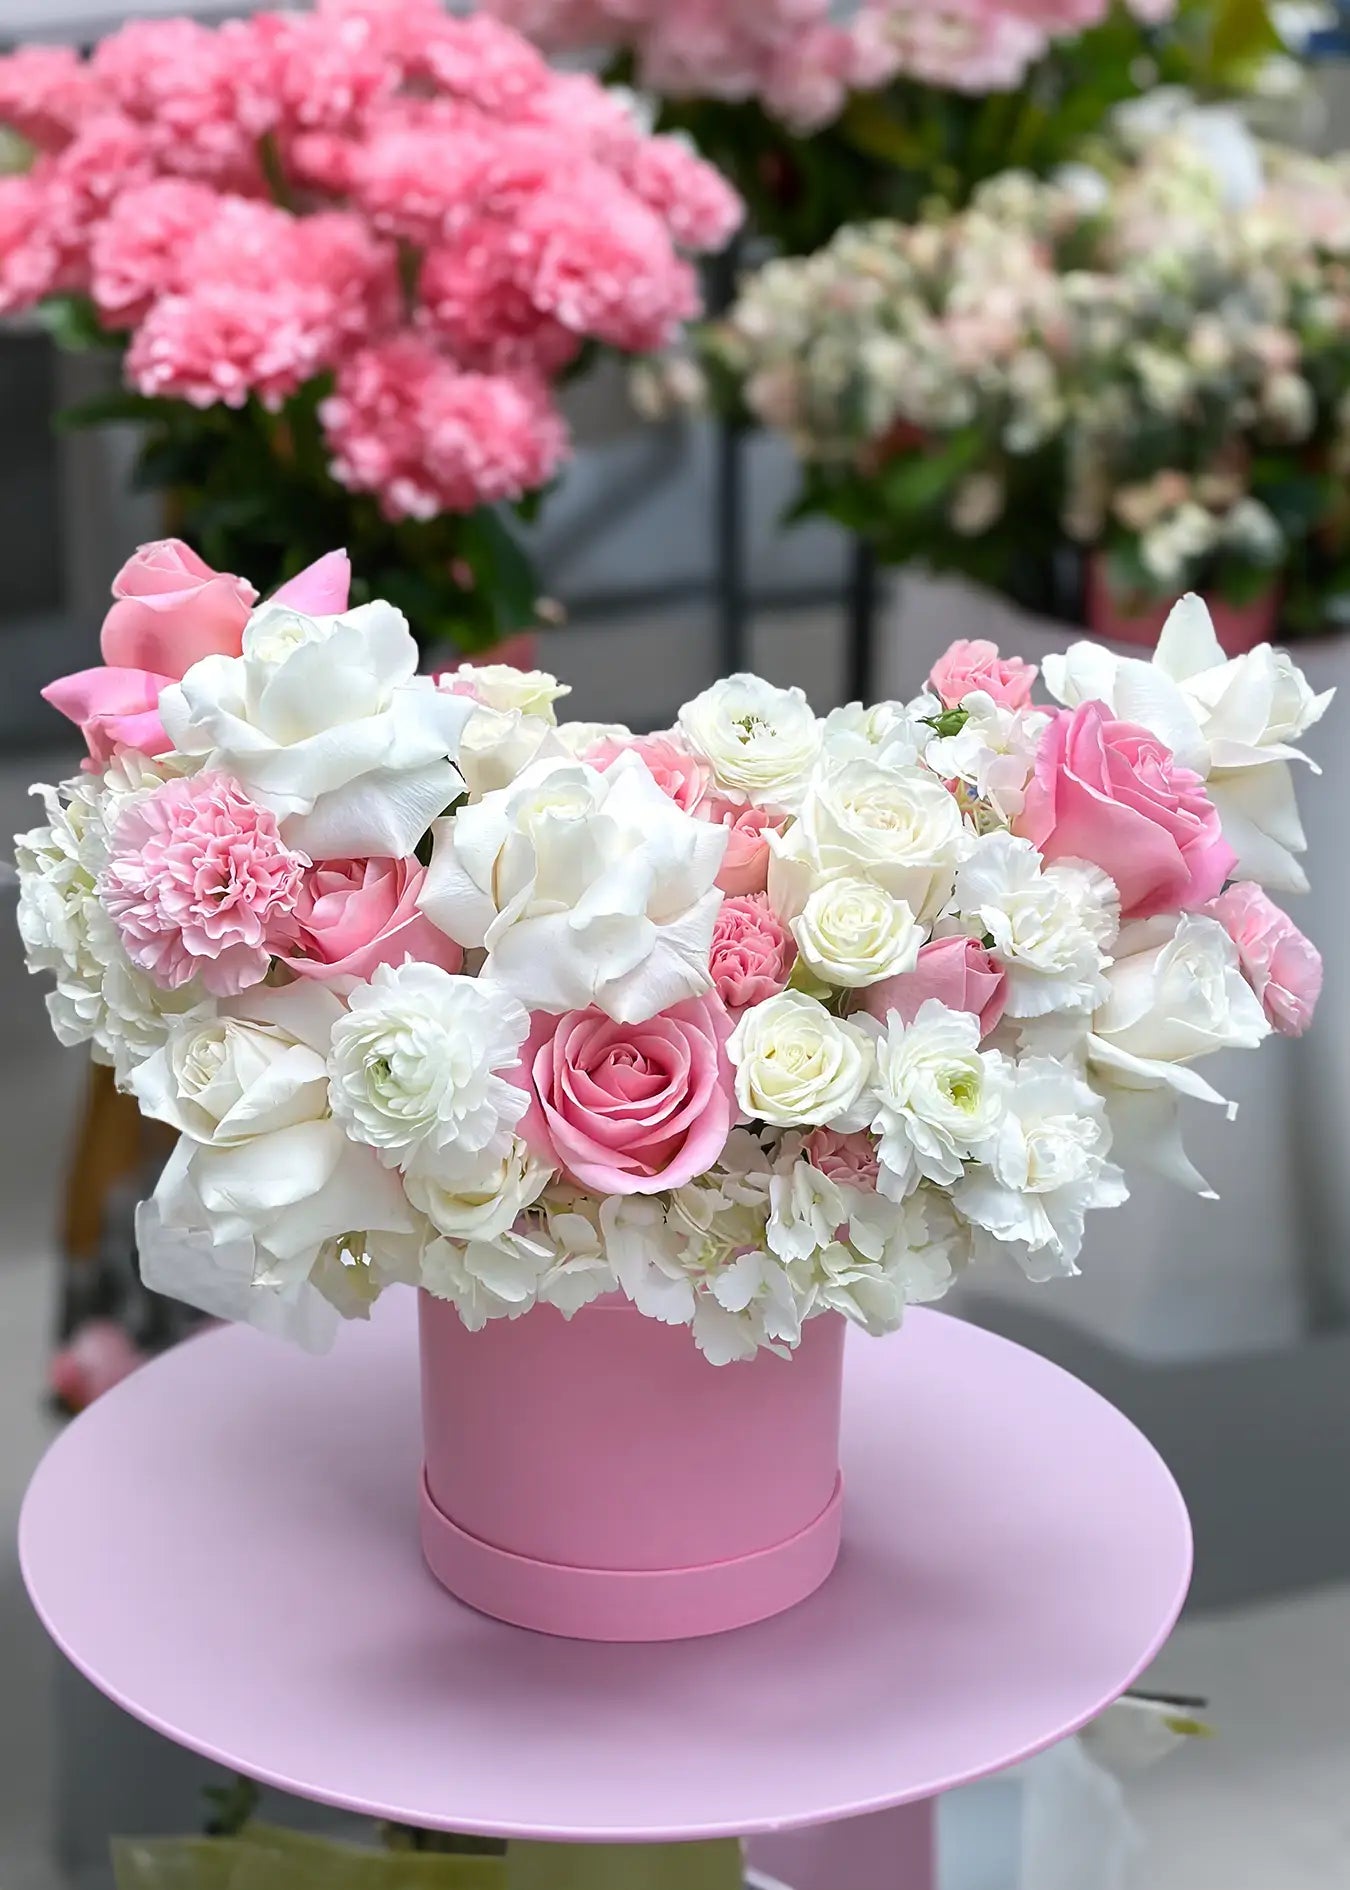 Serene Flower Hatbox, Hatbox Flowers